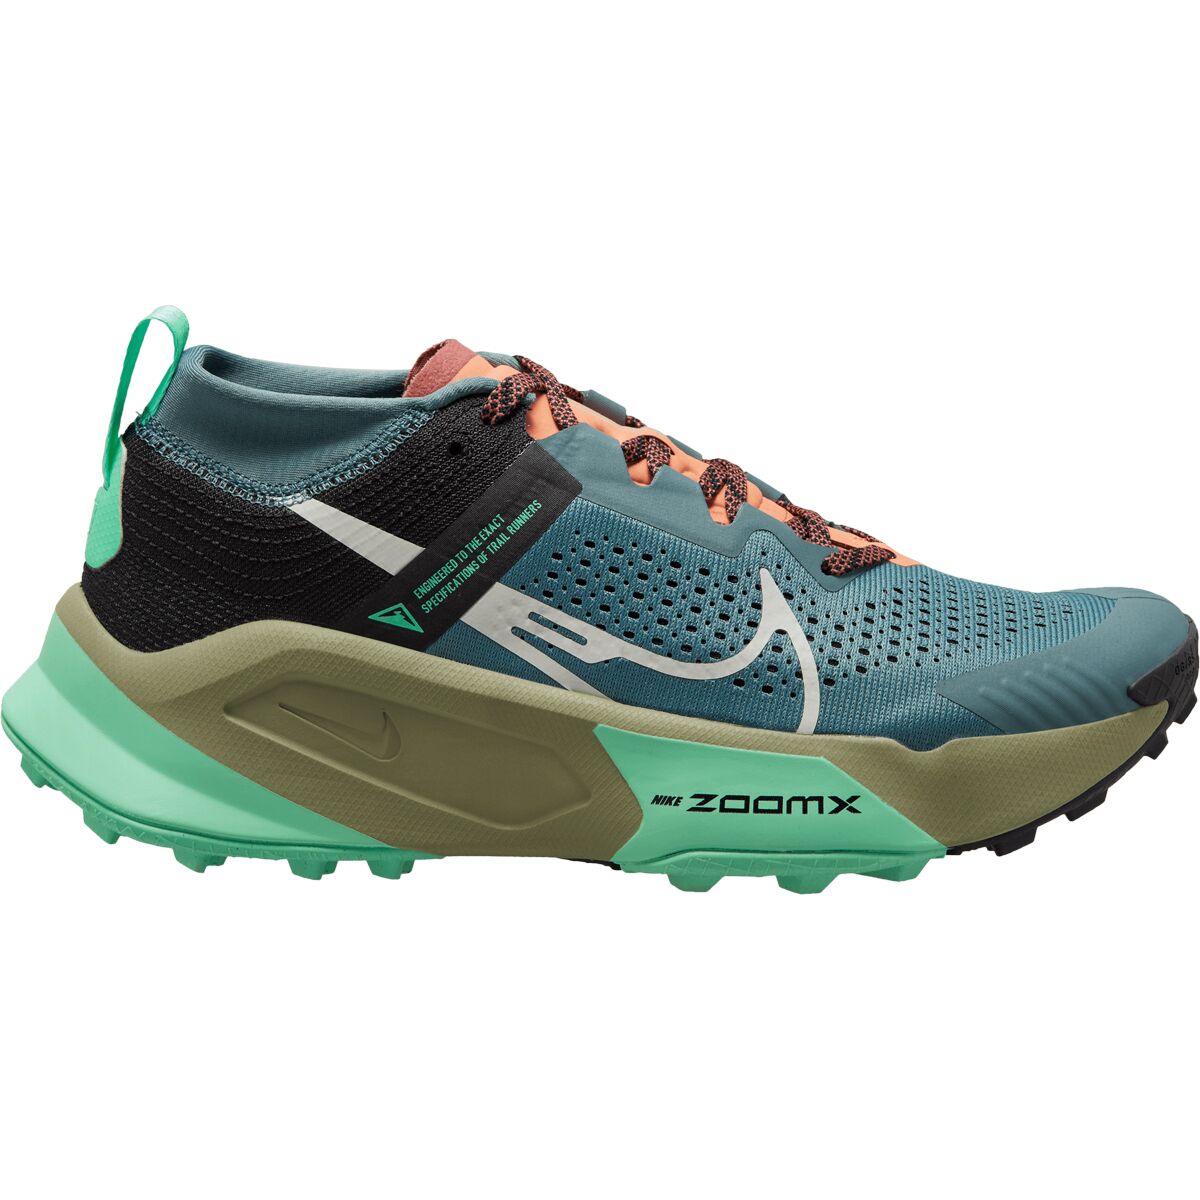 ZoomX Zegama Trail Running Shoe - Women